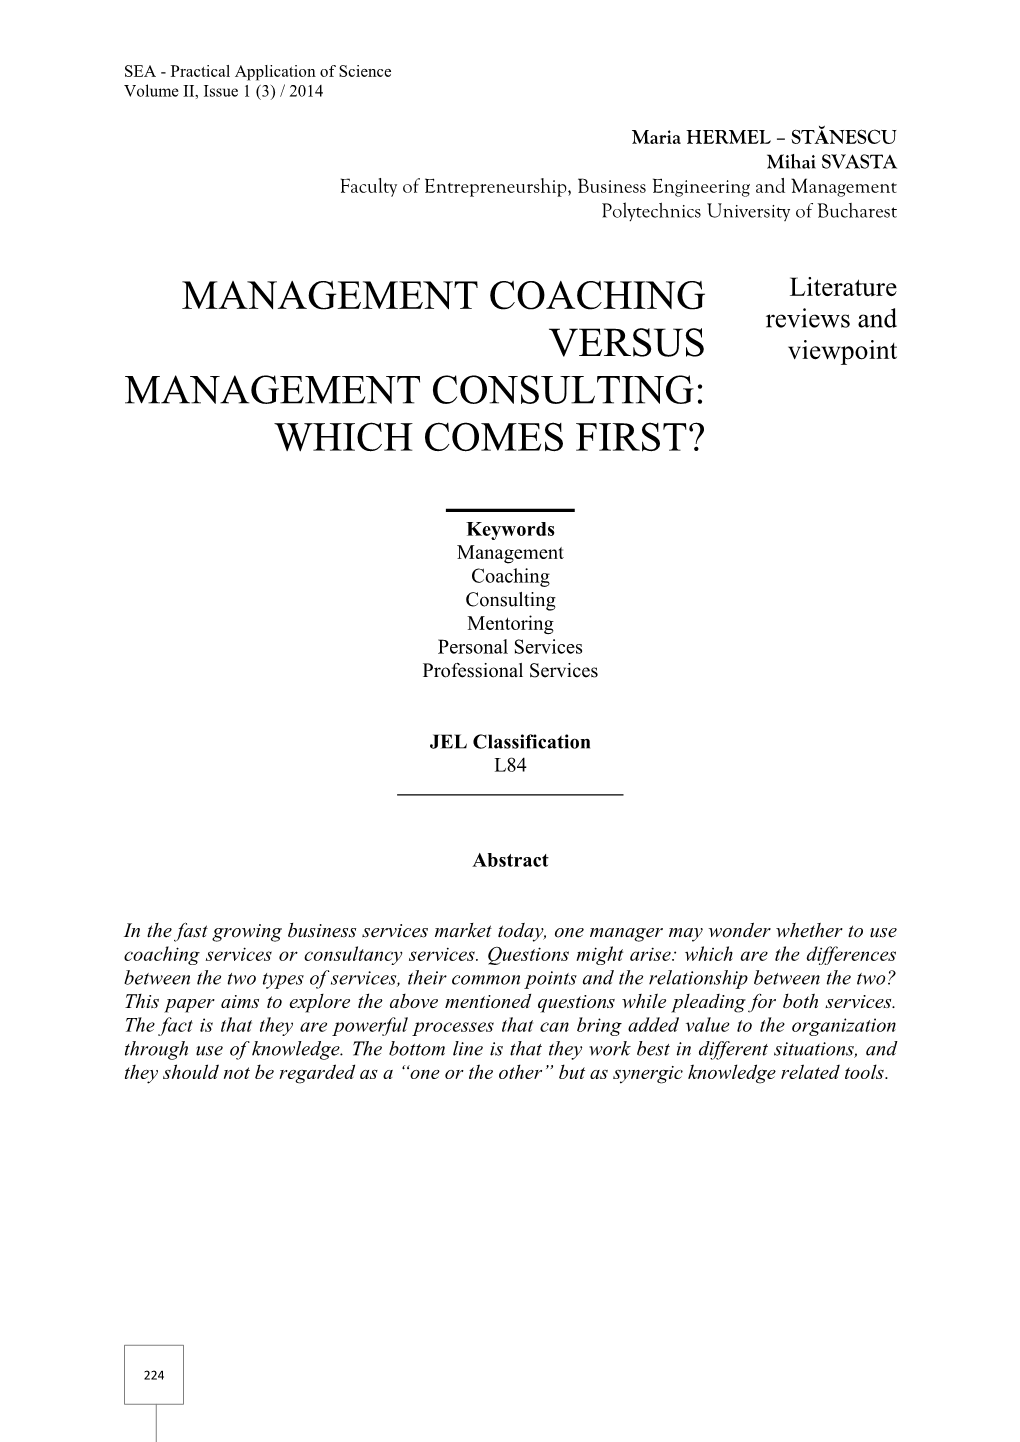 Management Coaching Versus